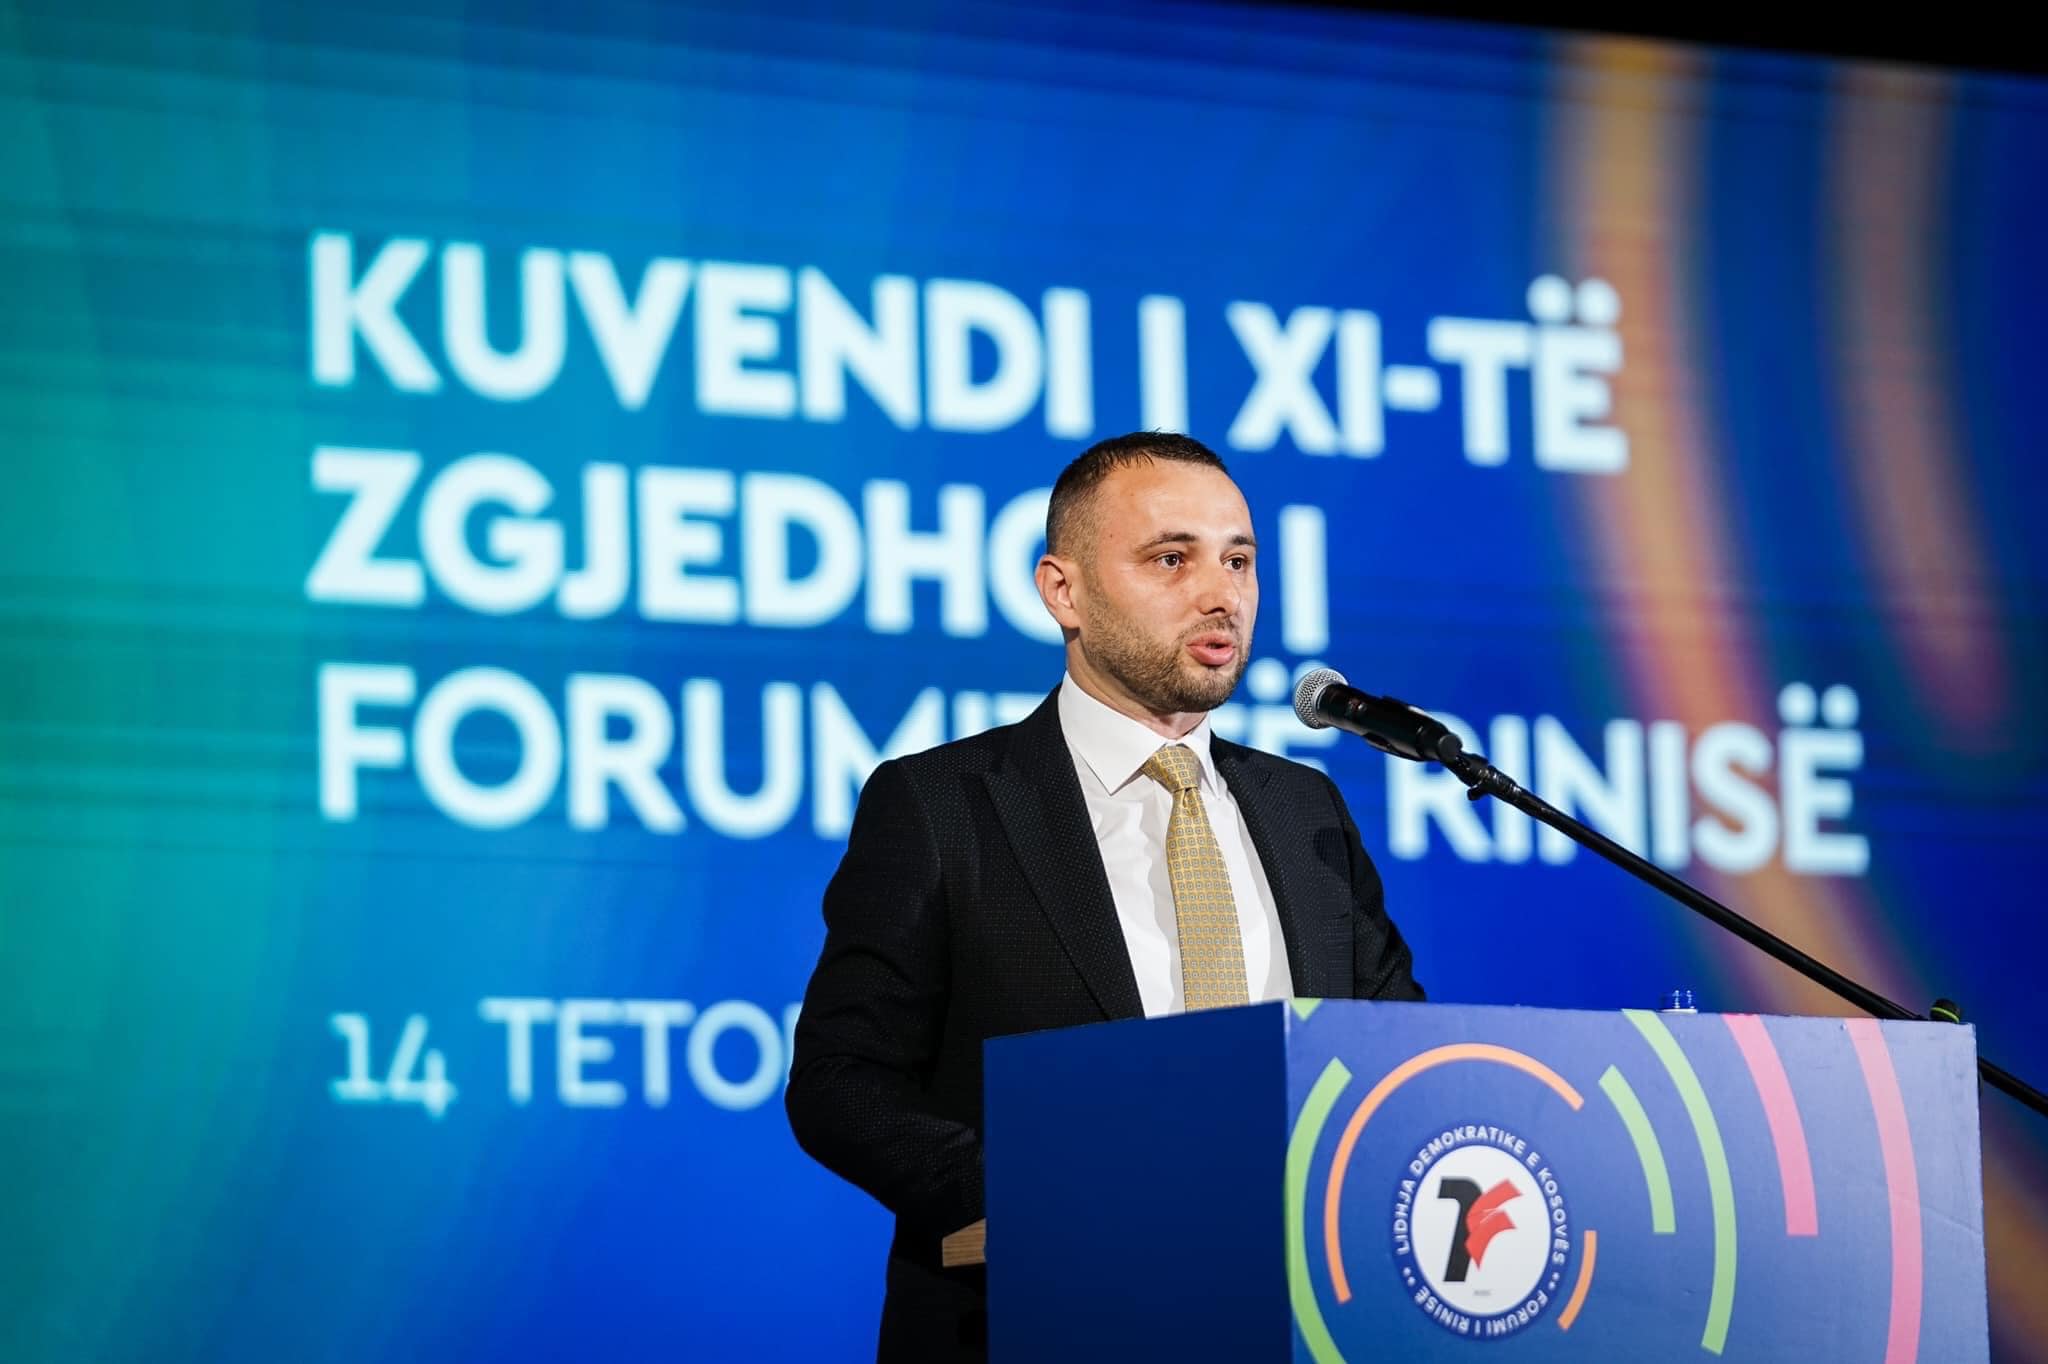  Fidan Rekaliu përfundon mandatin si kryetar i Forumit Rinor të LDK-së